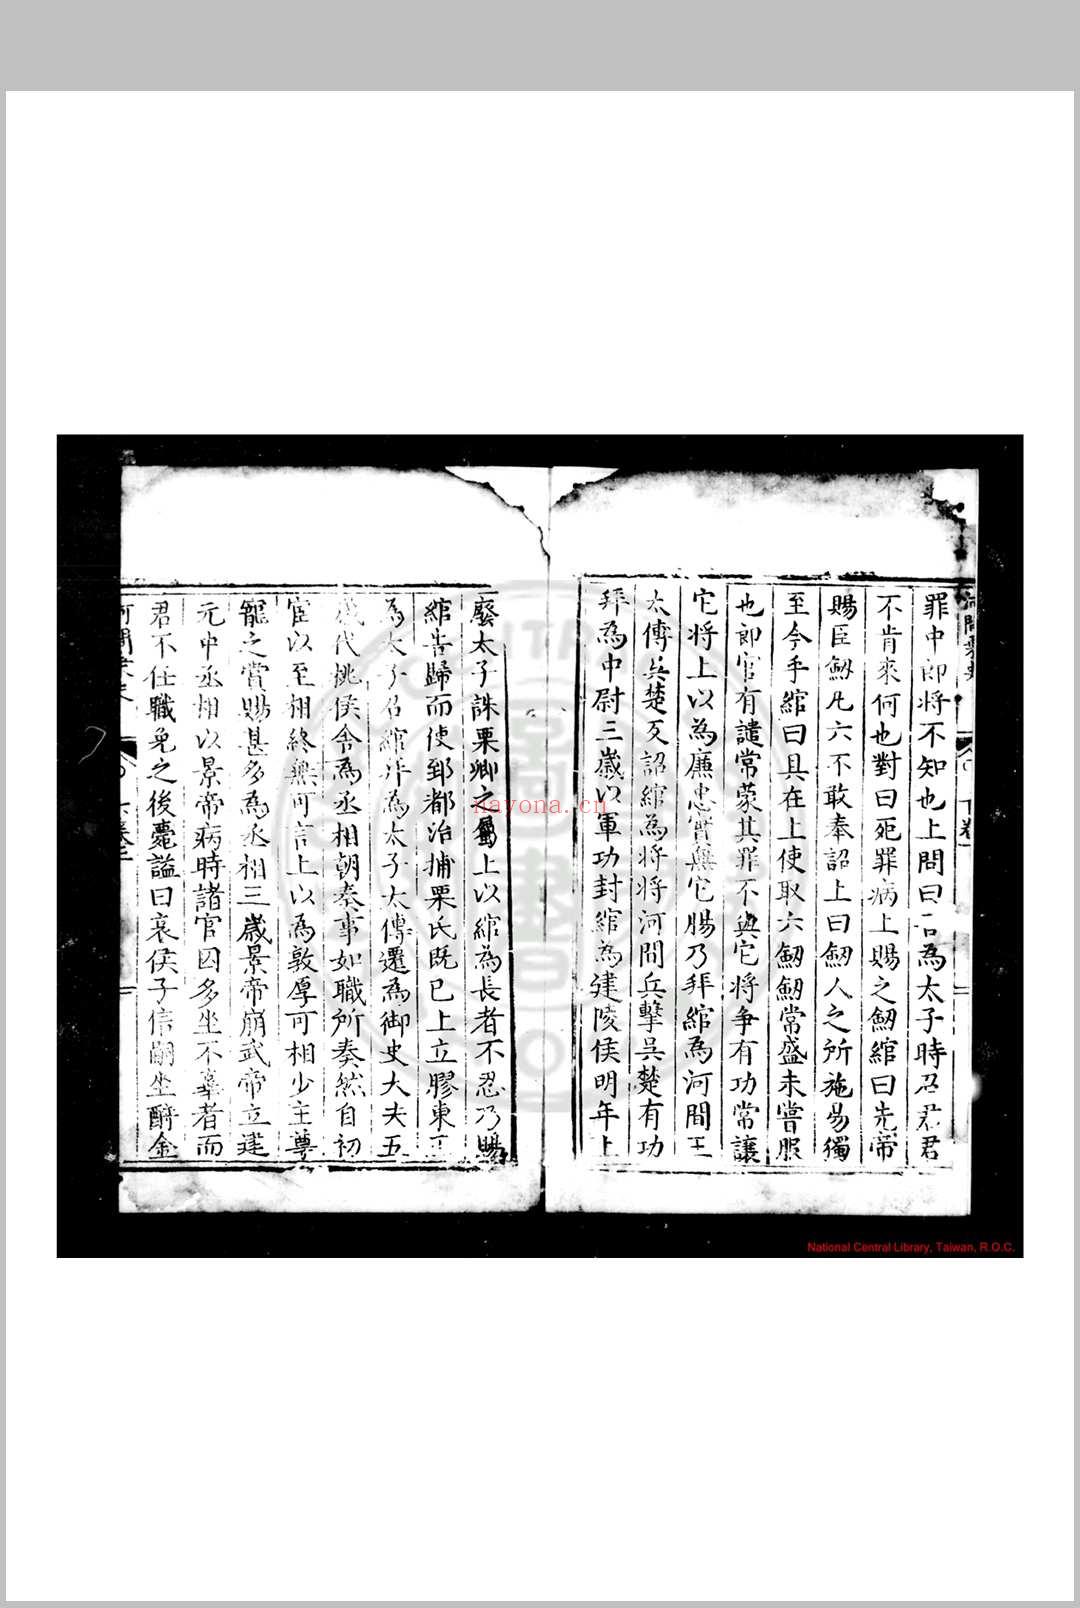 河间乘史 (明)赵完璧撰 明万历间(1573-1620)刊本